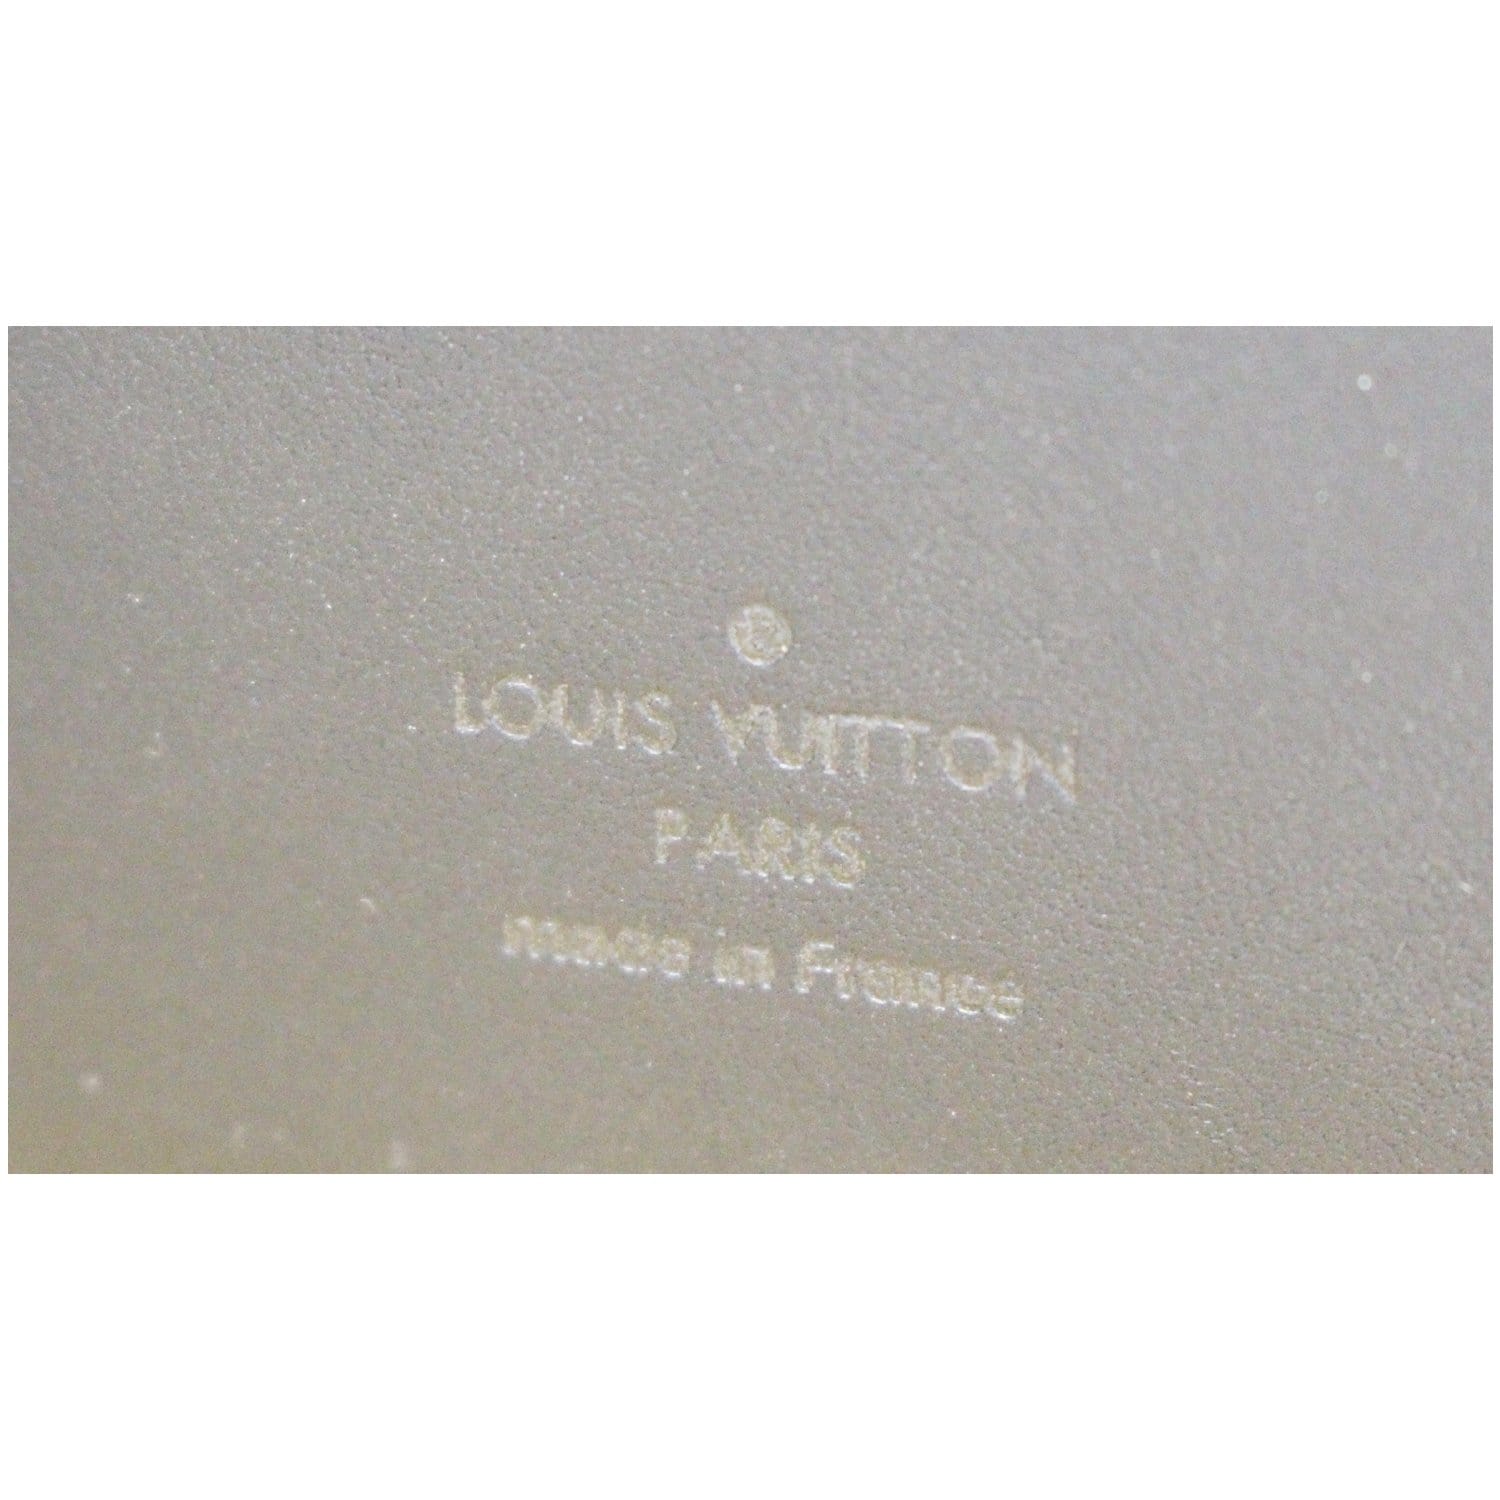 Louis Vuitton Damier Infini Atoll Onyx Black Leather XL Organizer